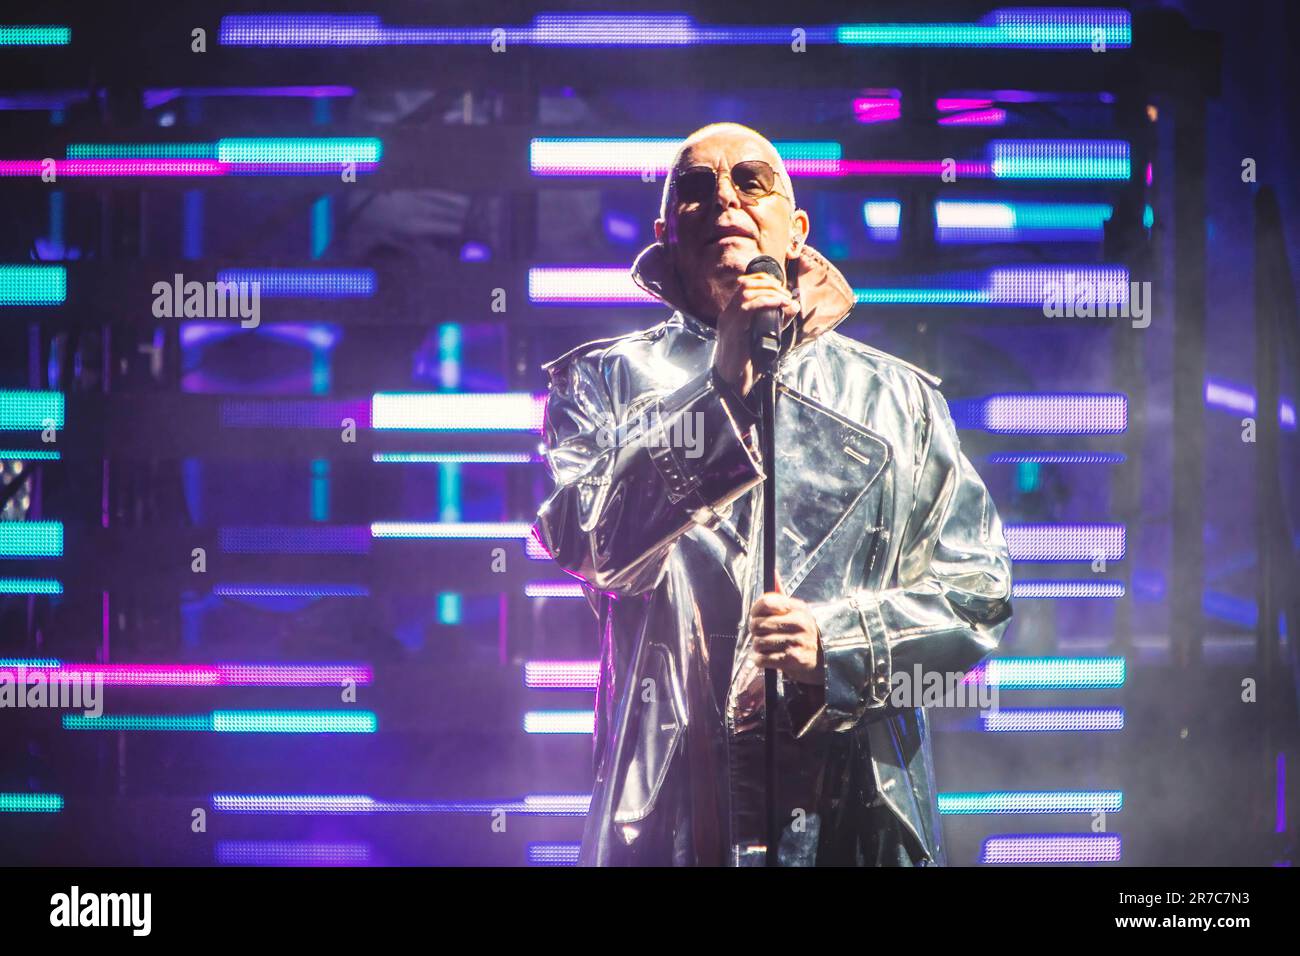 Cantante inglese, cantautore, giornalista musicale e co-fondatore del duo pop-synth PET Shop Boys, Neil Tennant suona sul palco all'Auditorium Parco della Musica di Roma. Foto Stock